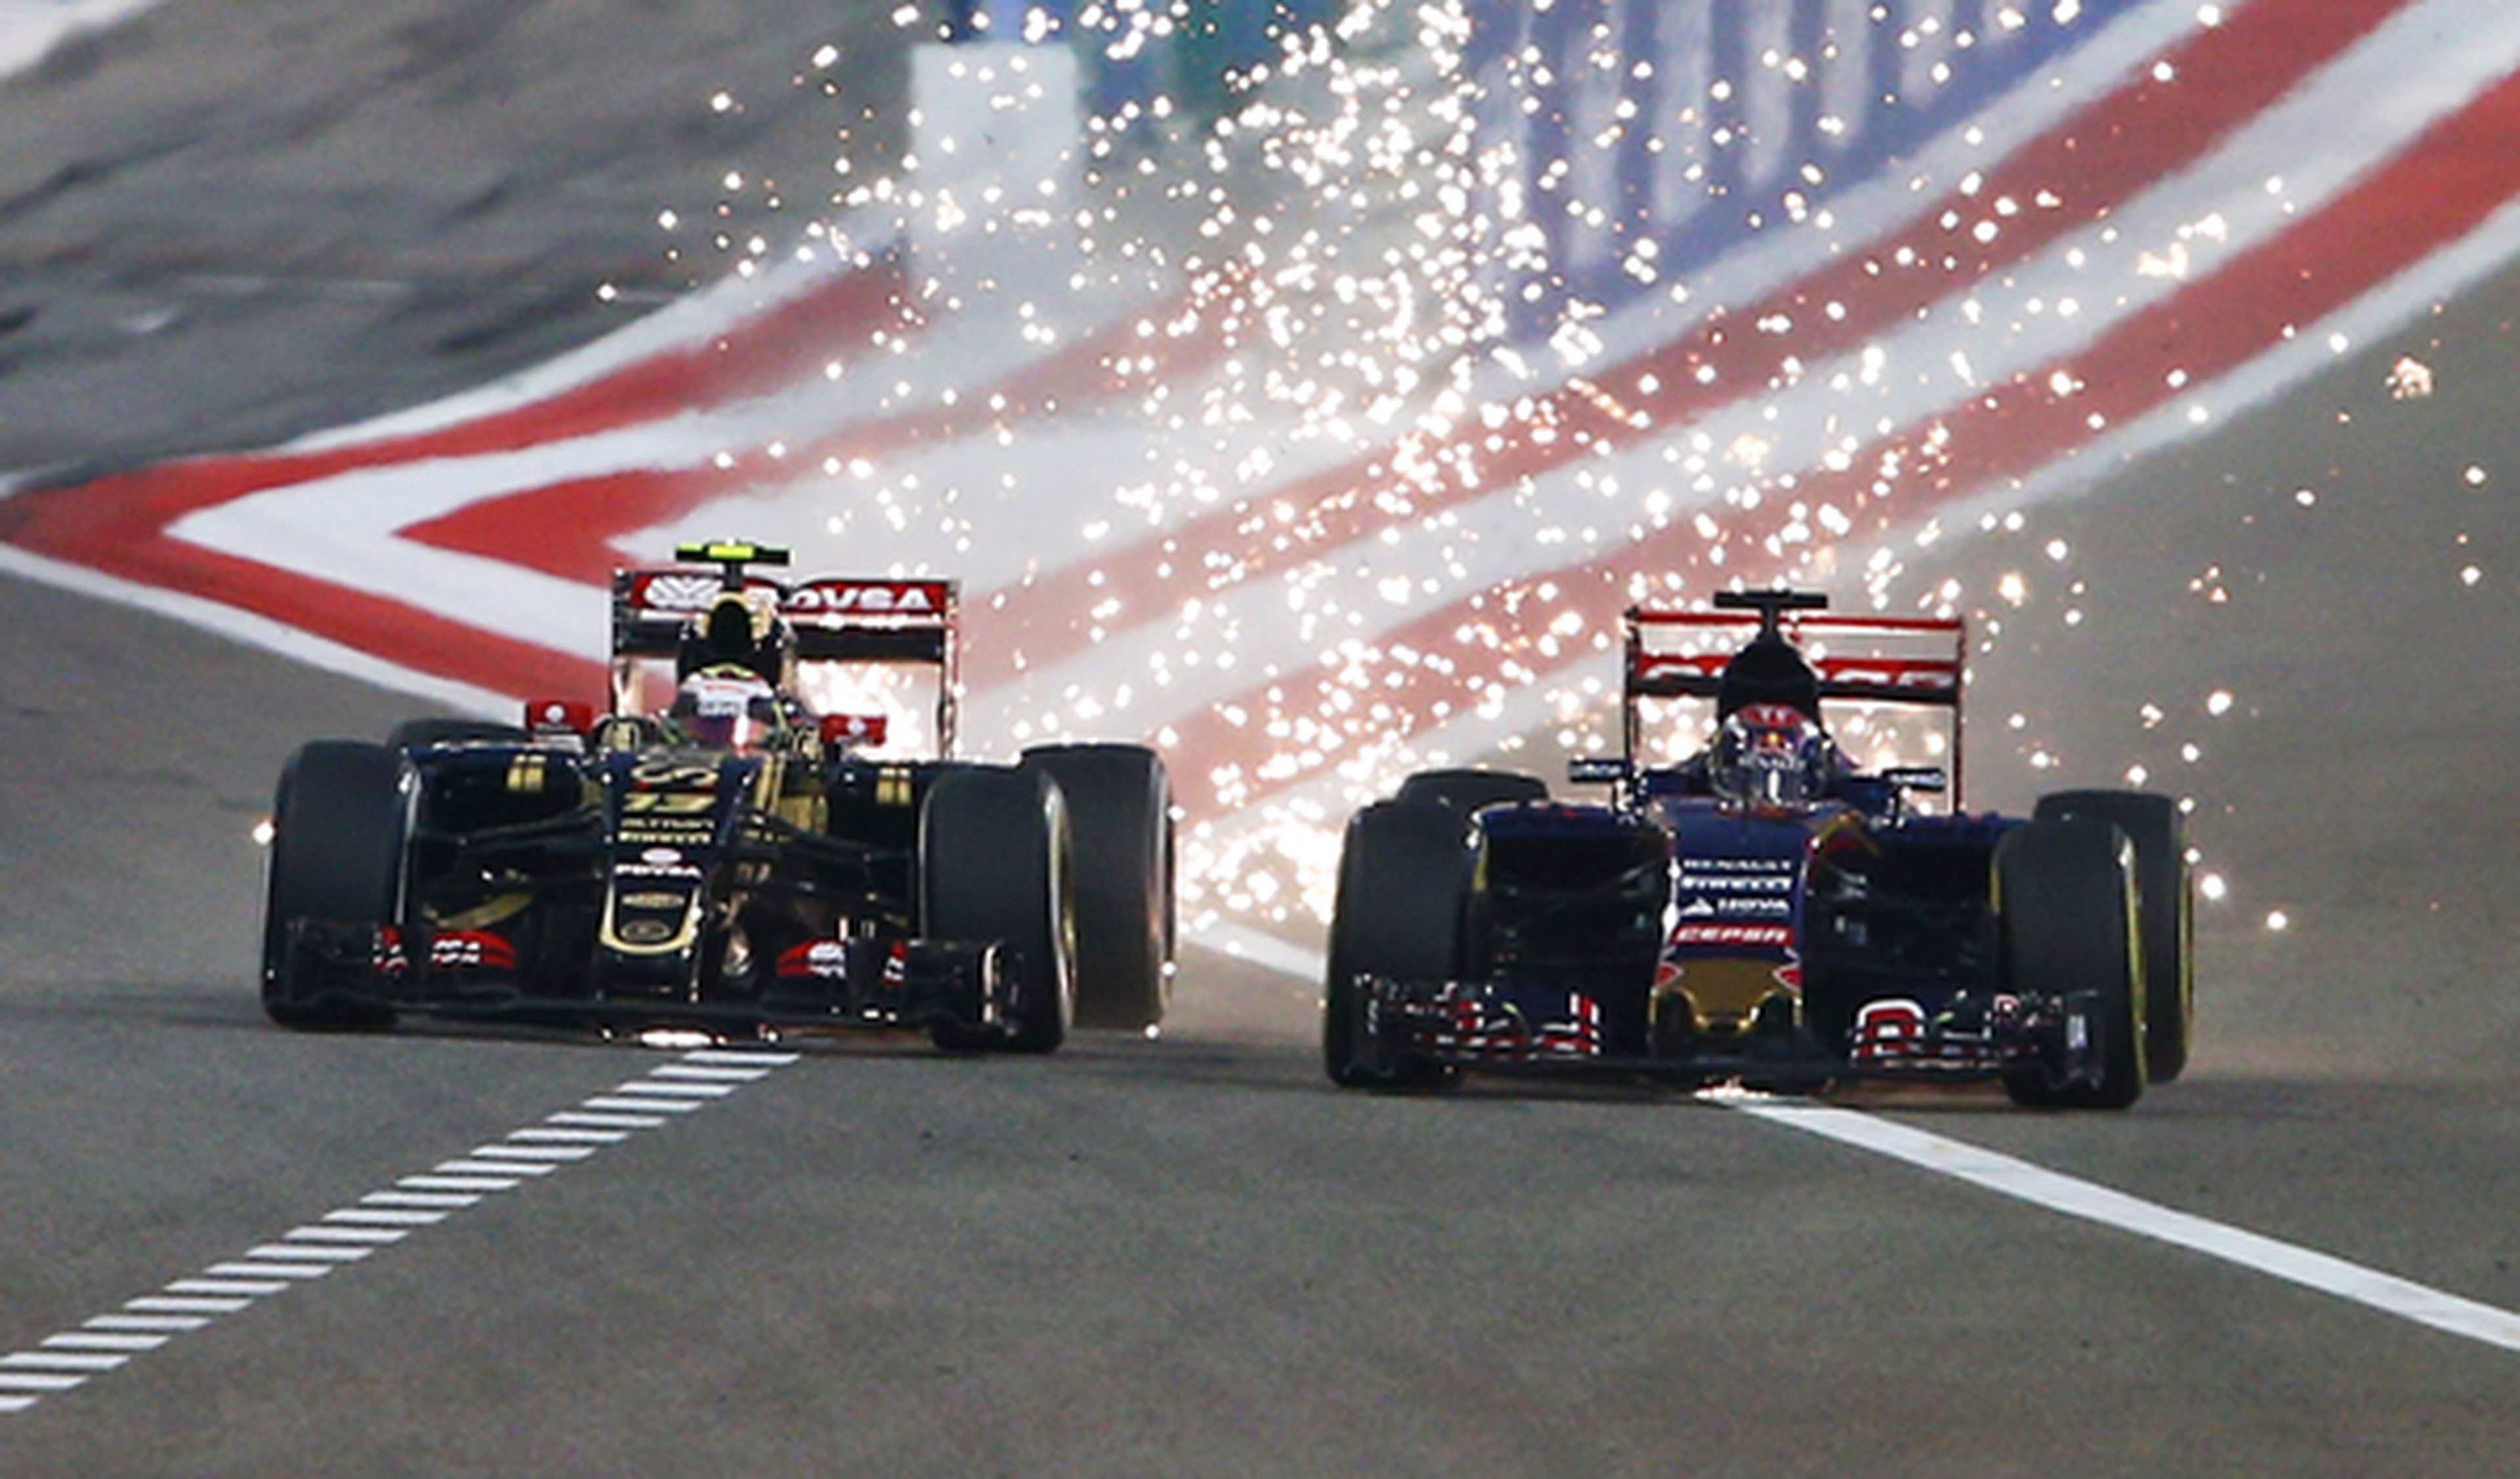 Las chispas de los F1 animan el GP de Bahréin 2015